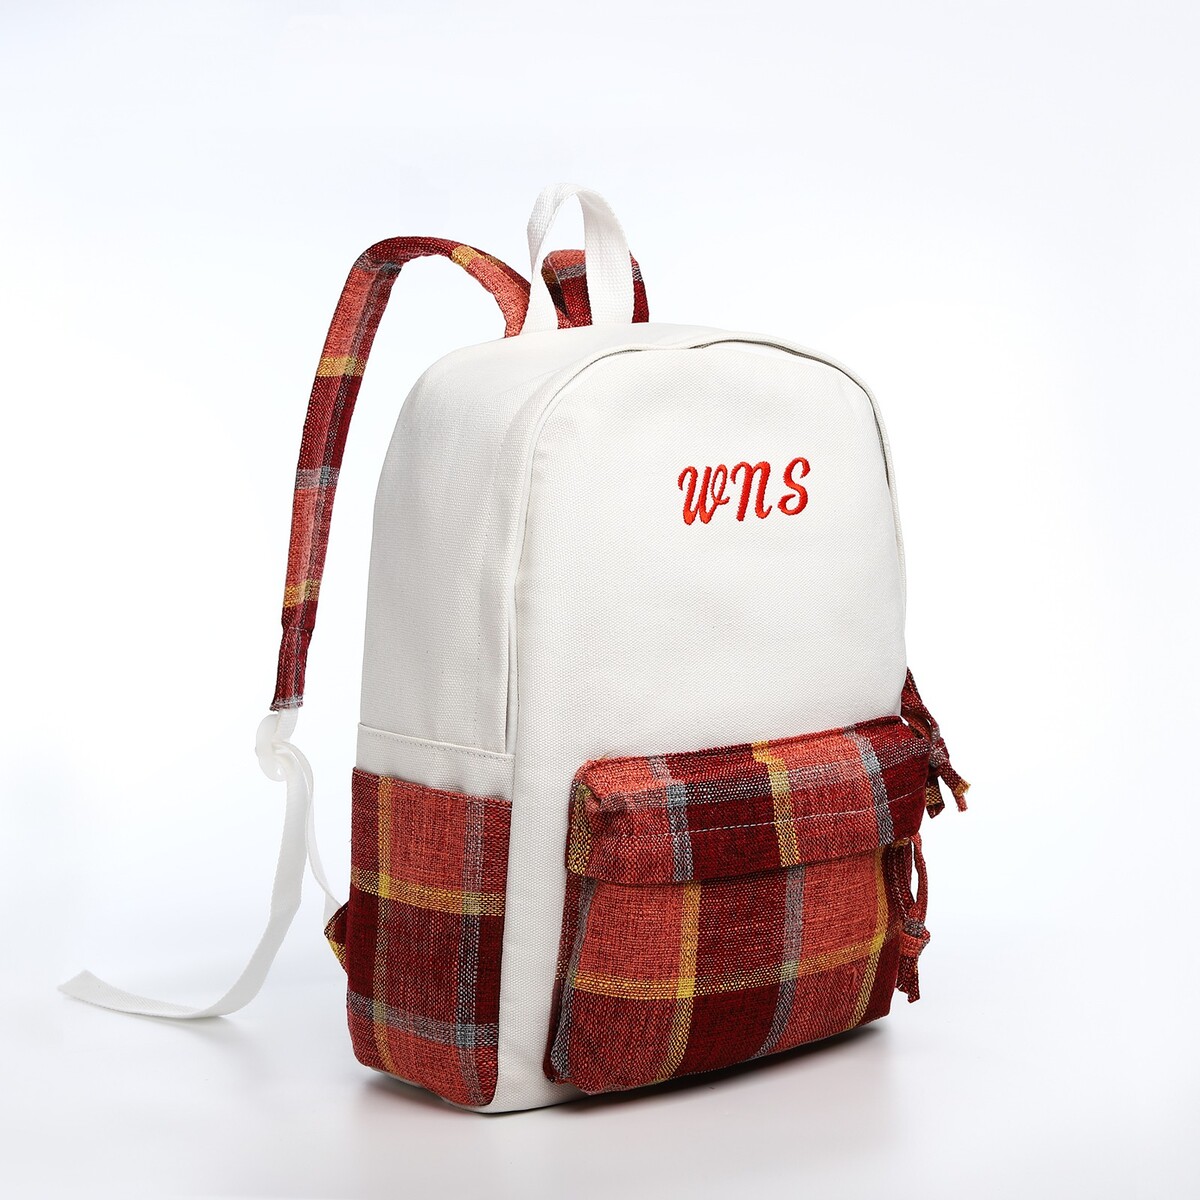 Рюкзак молодежный из текстиля, 3 кармана, цвет белый/коричневый/красный рюкзак молодежный из текстиля 3 кармана белый коричневый красный